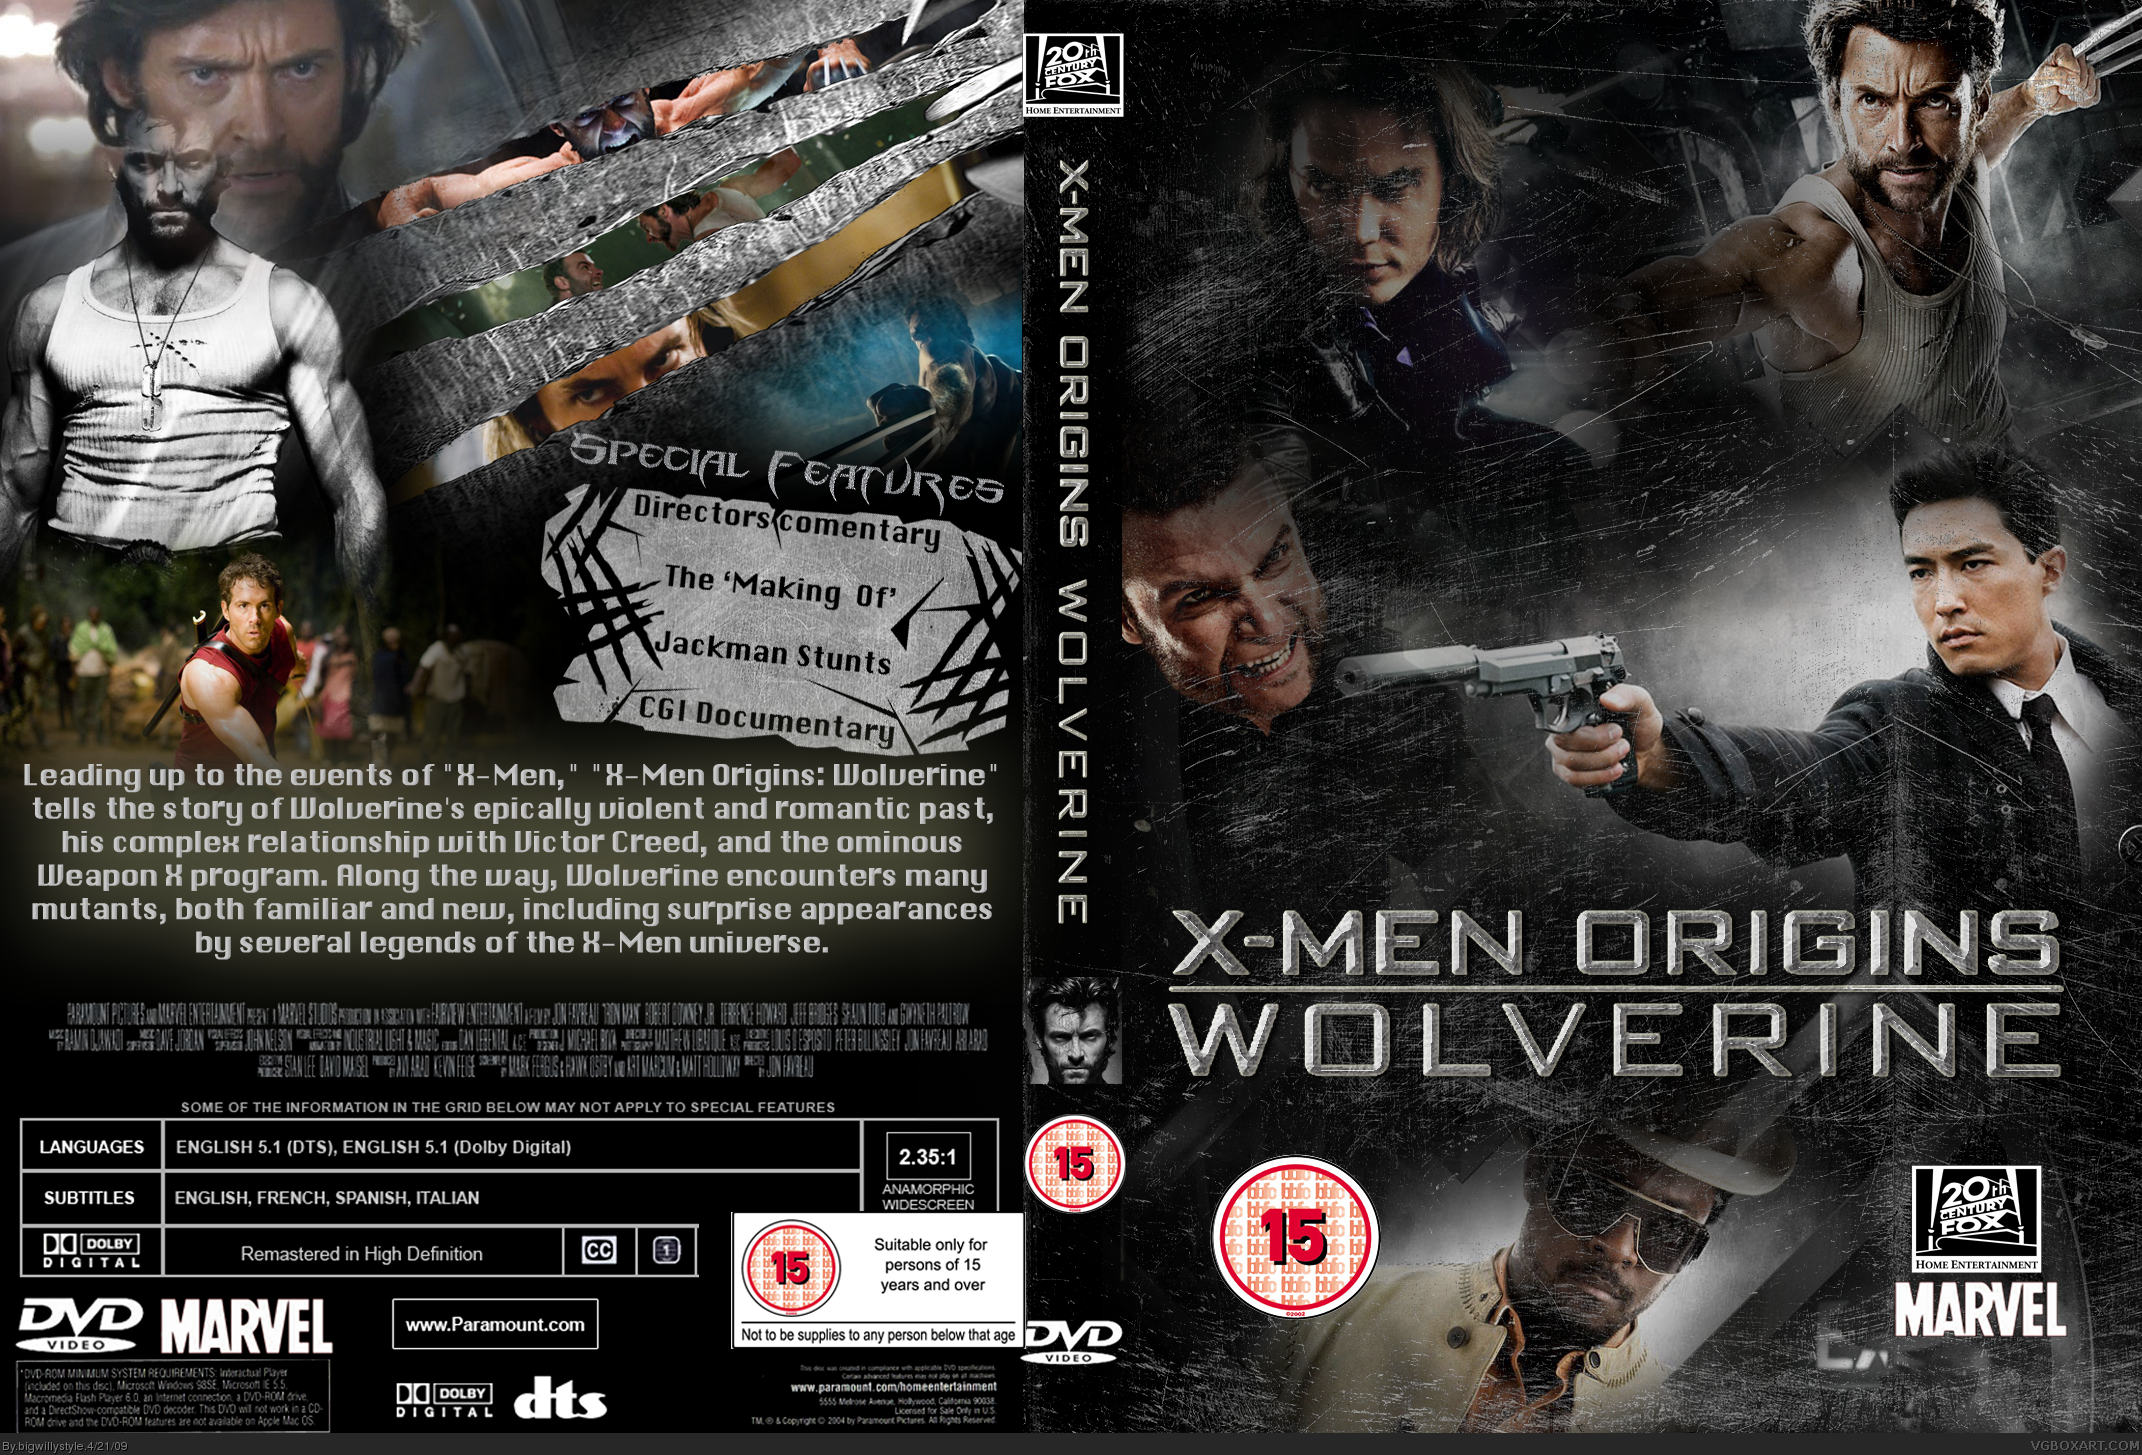 X-Men Origins: Wolverine box cover